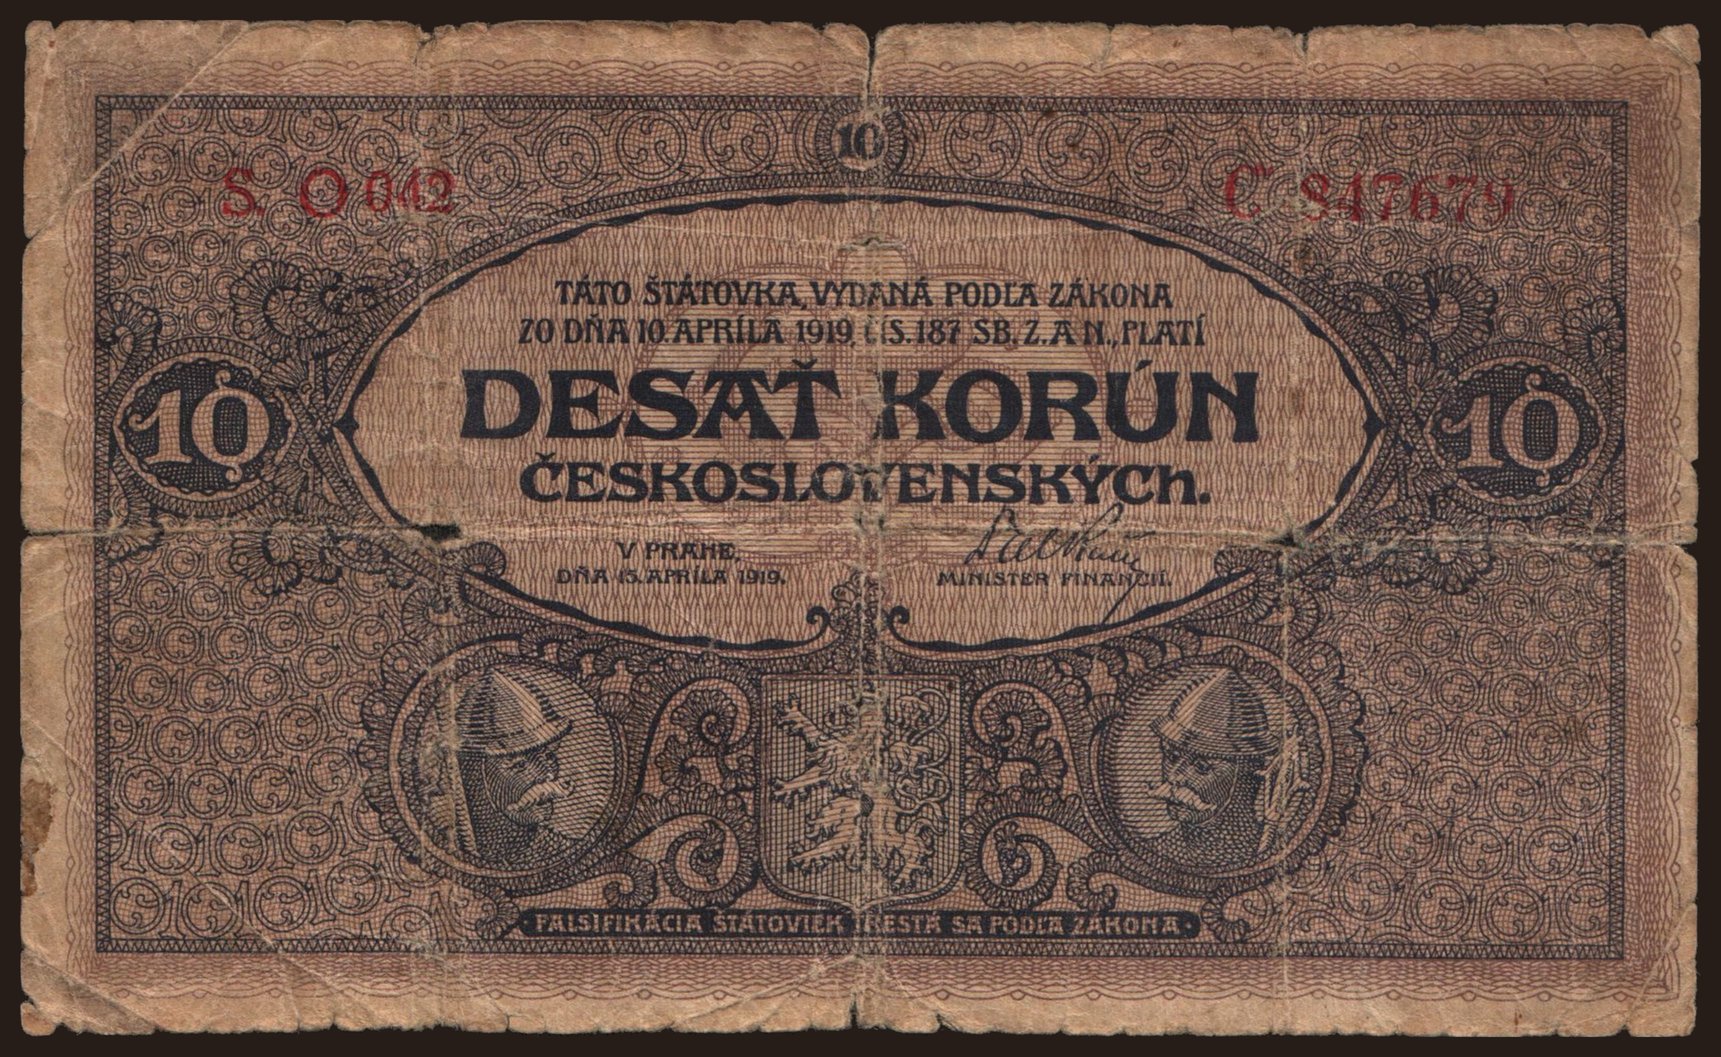 10 korun, 1919